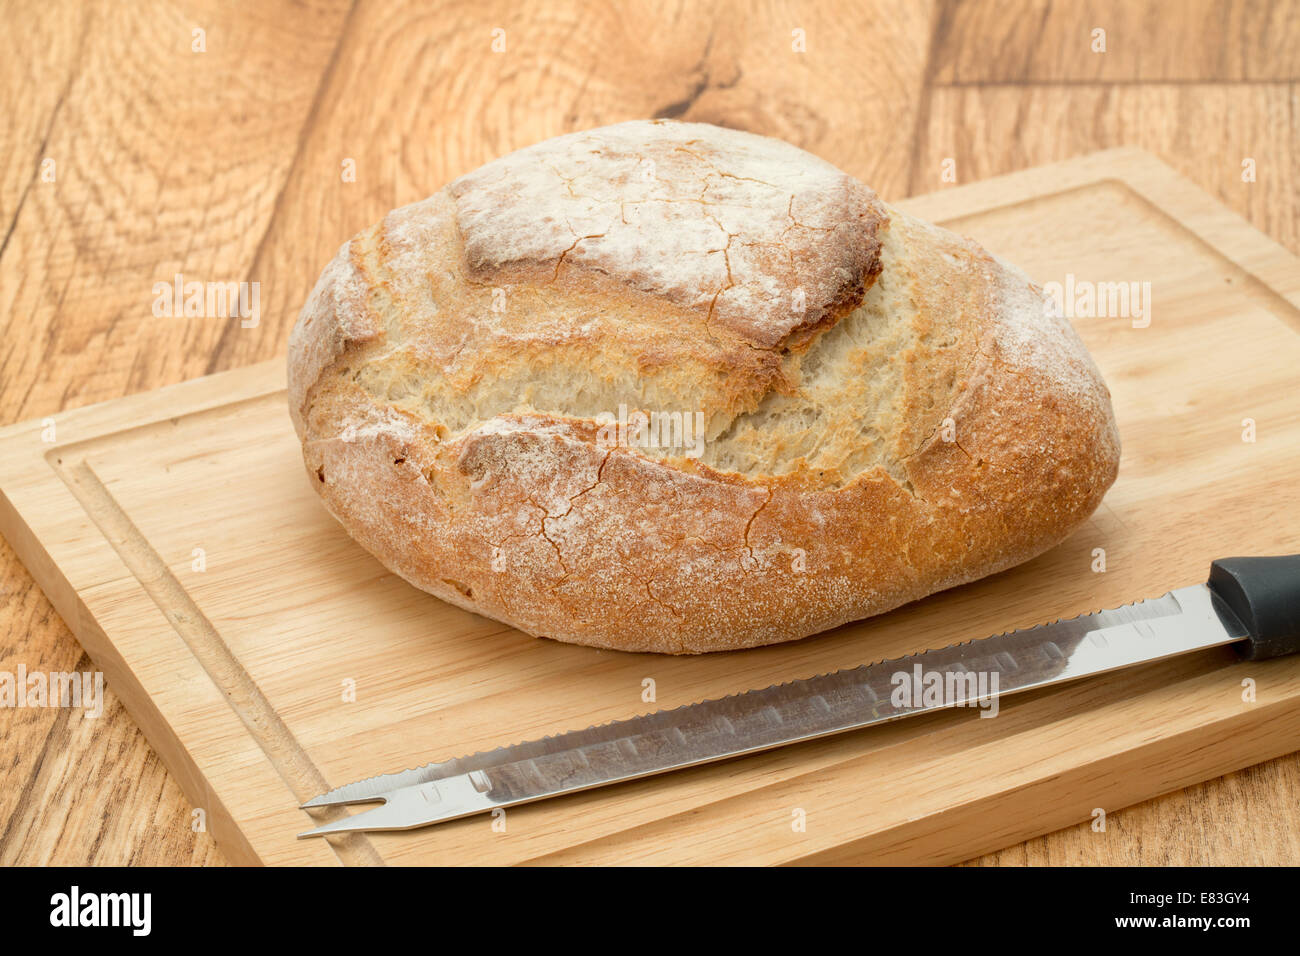 Un rustico francese pagnotta di pane su un tagliere di legno con un coltello per pane - studio shot Foto Stock